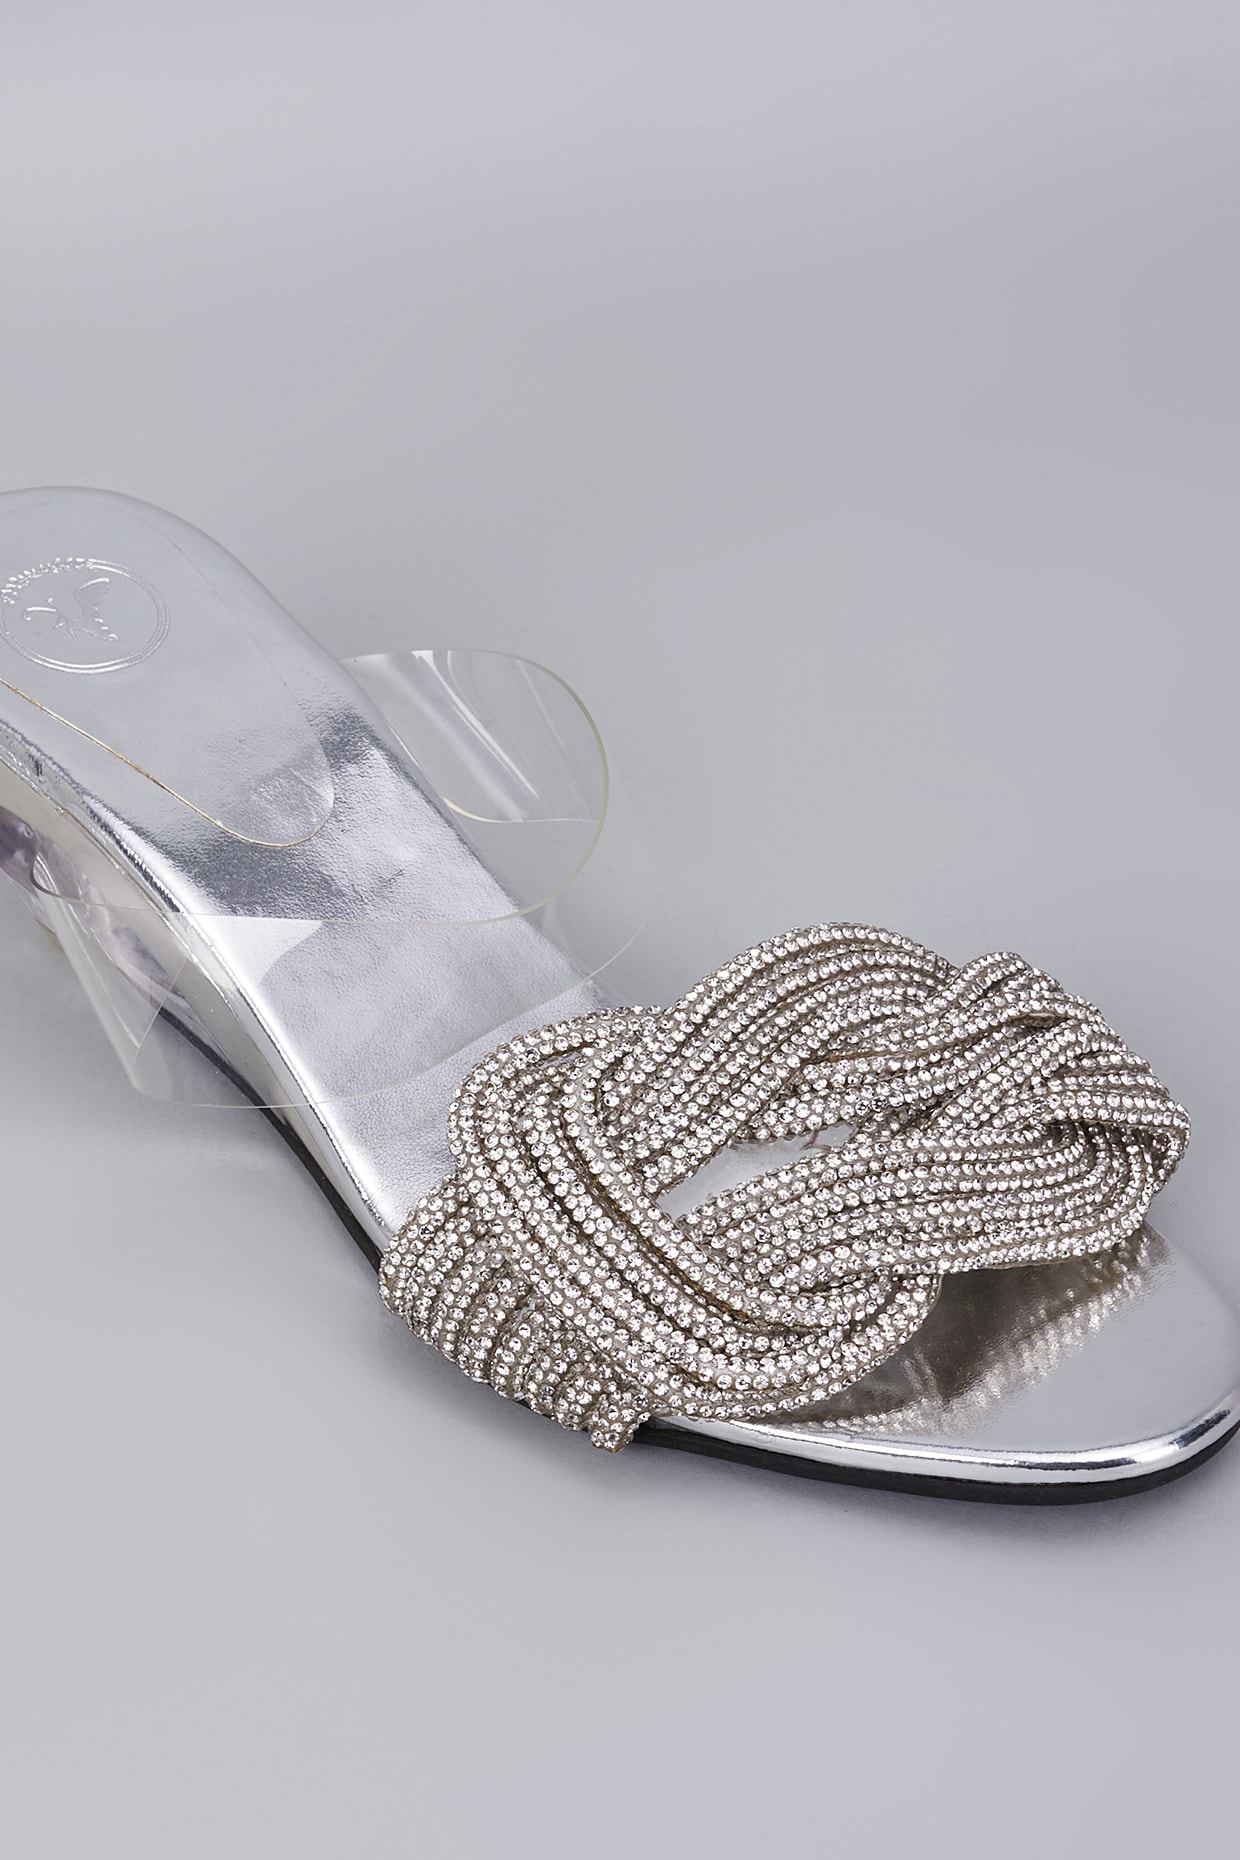 Zigi soho Tariff silver Rhinestone Heels Bling Embellished Size 8.5 | eBay